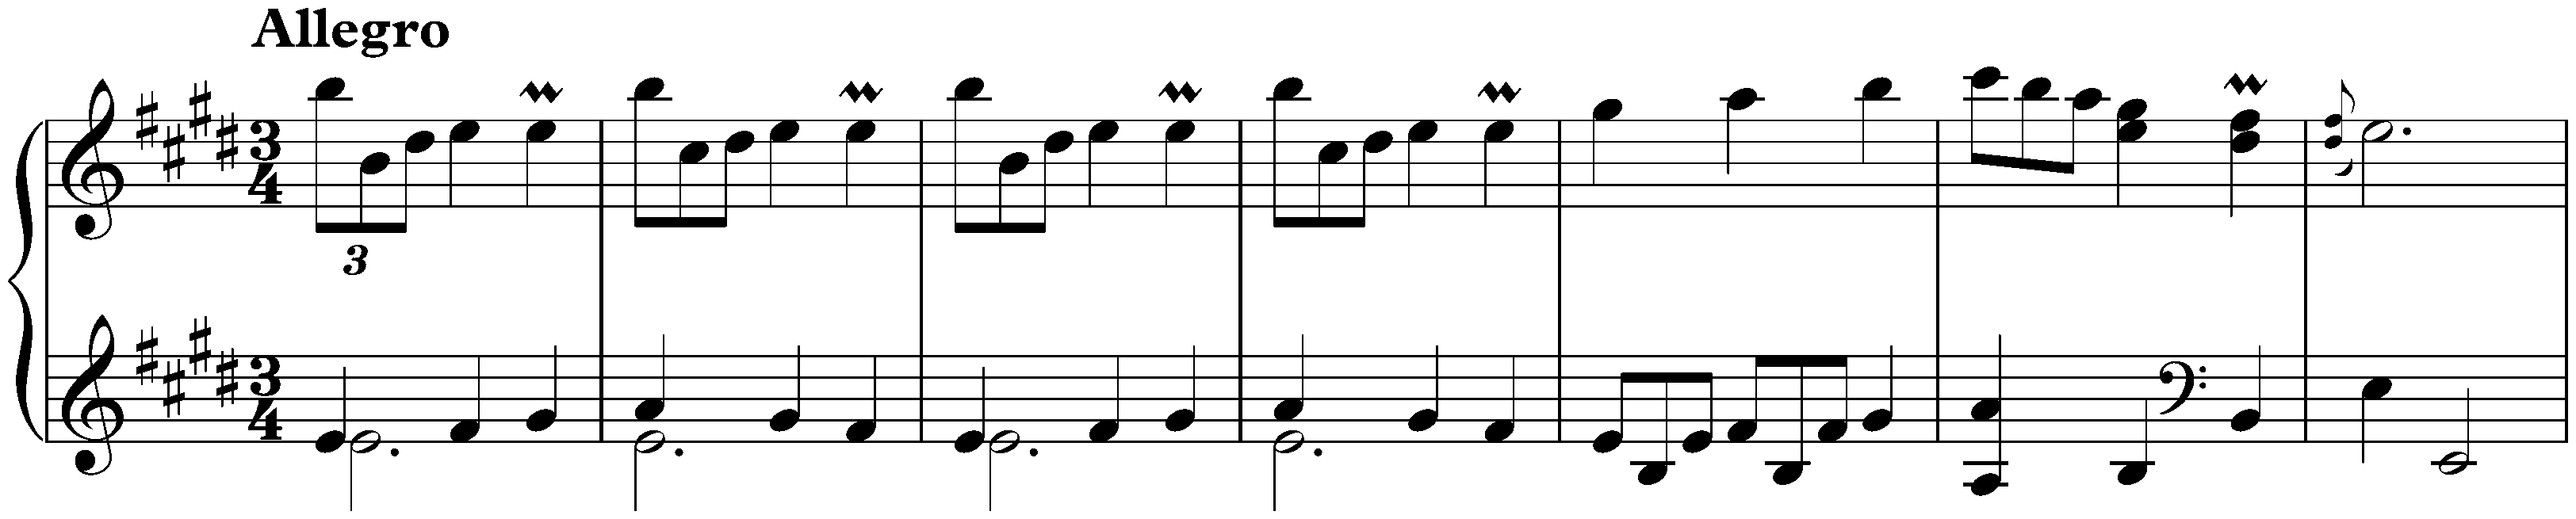 Sonata in E major, K. 496